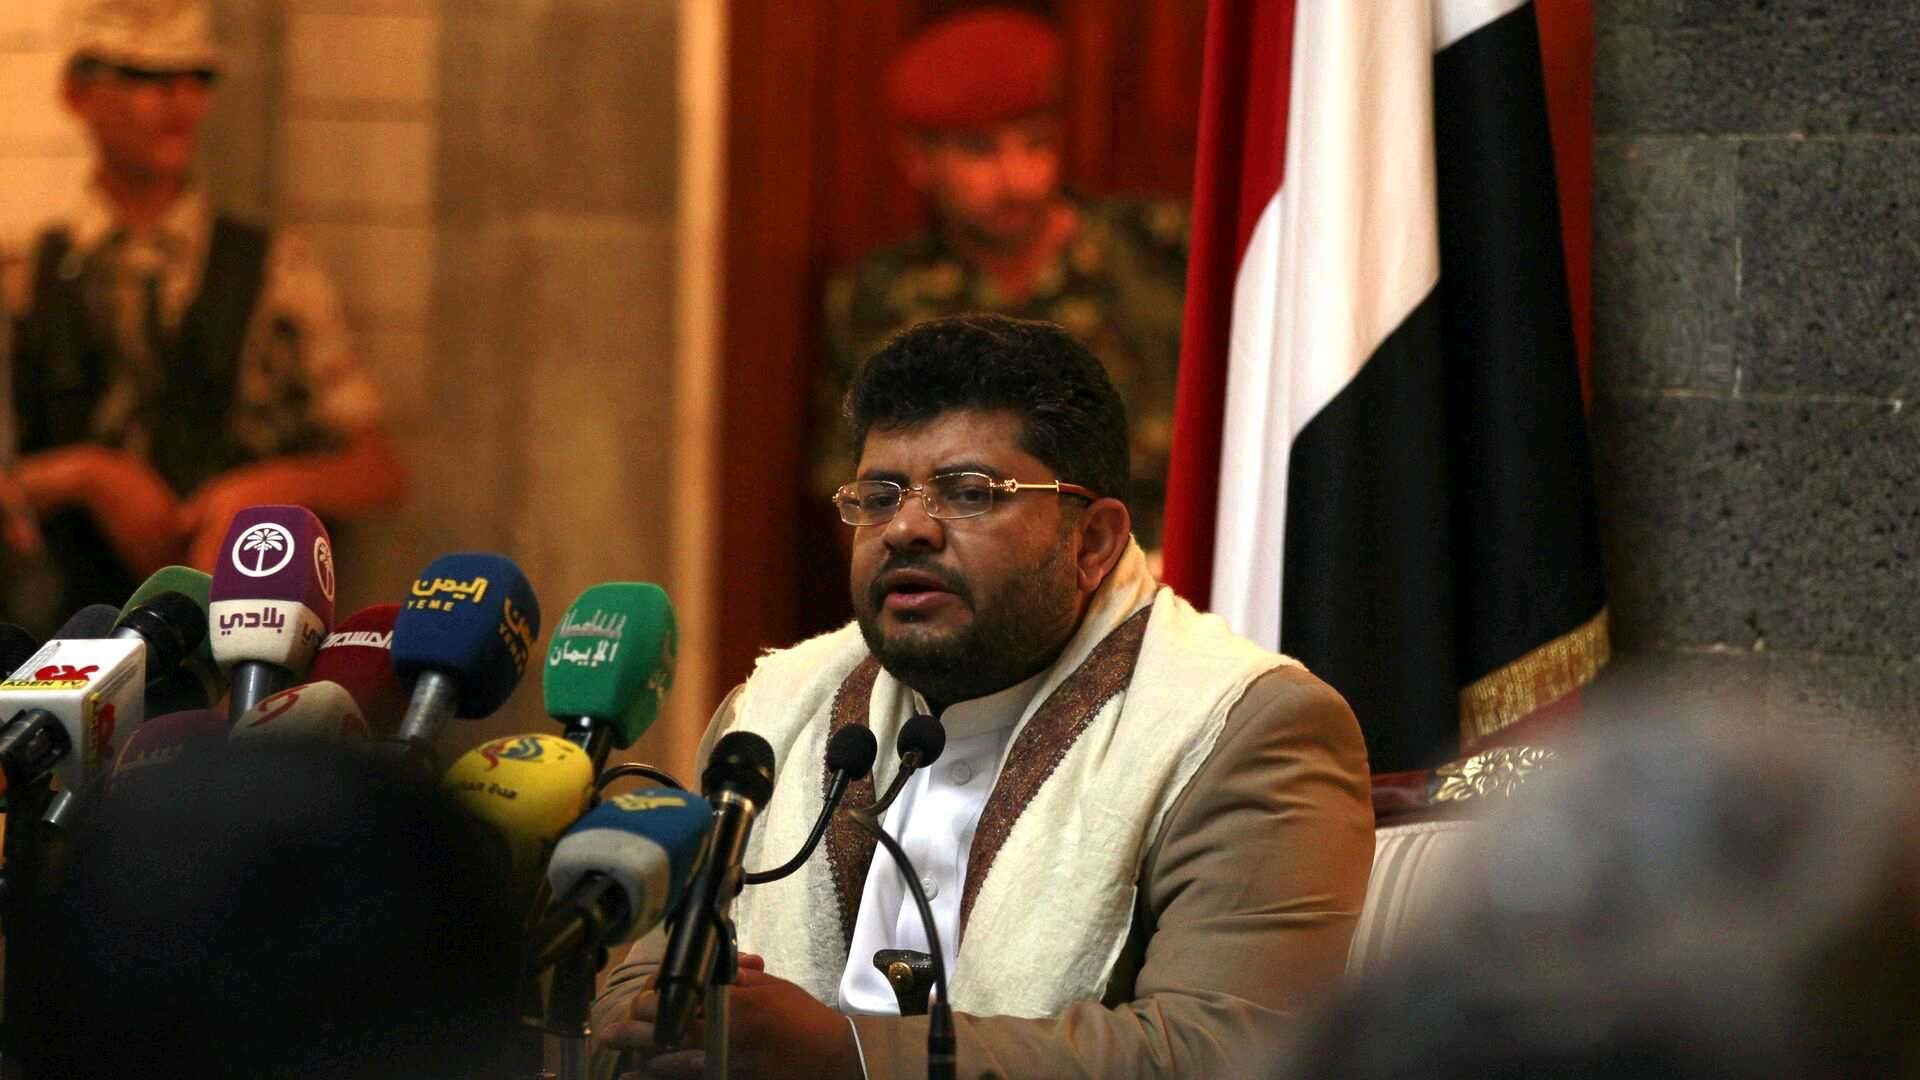 المجلس السياسي الأعلى في اليمن استنكر تكرار إحراق القرآن في السويد